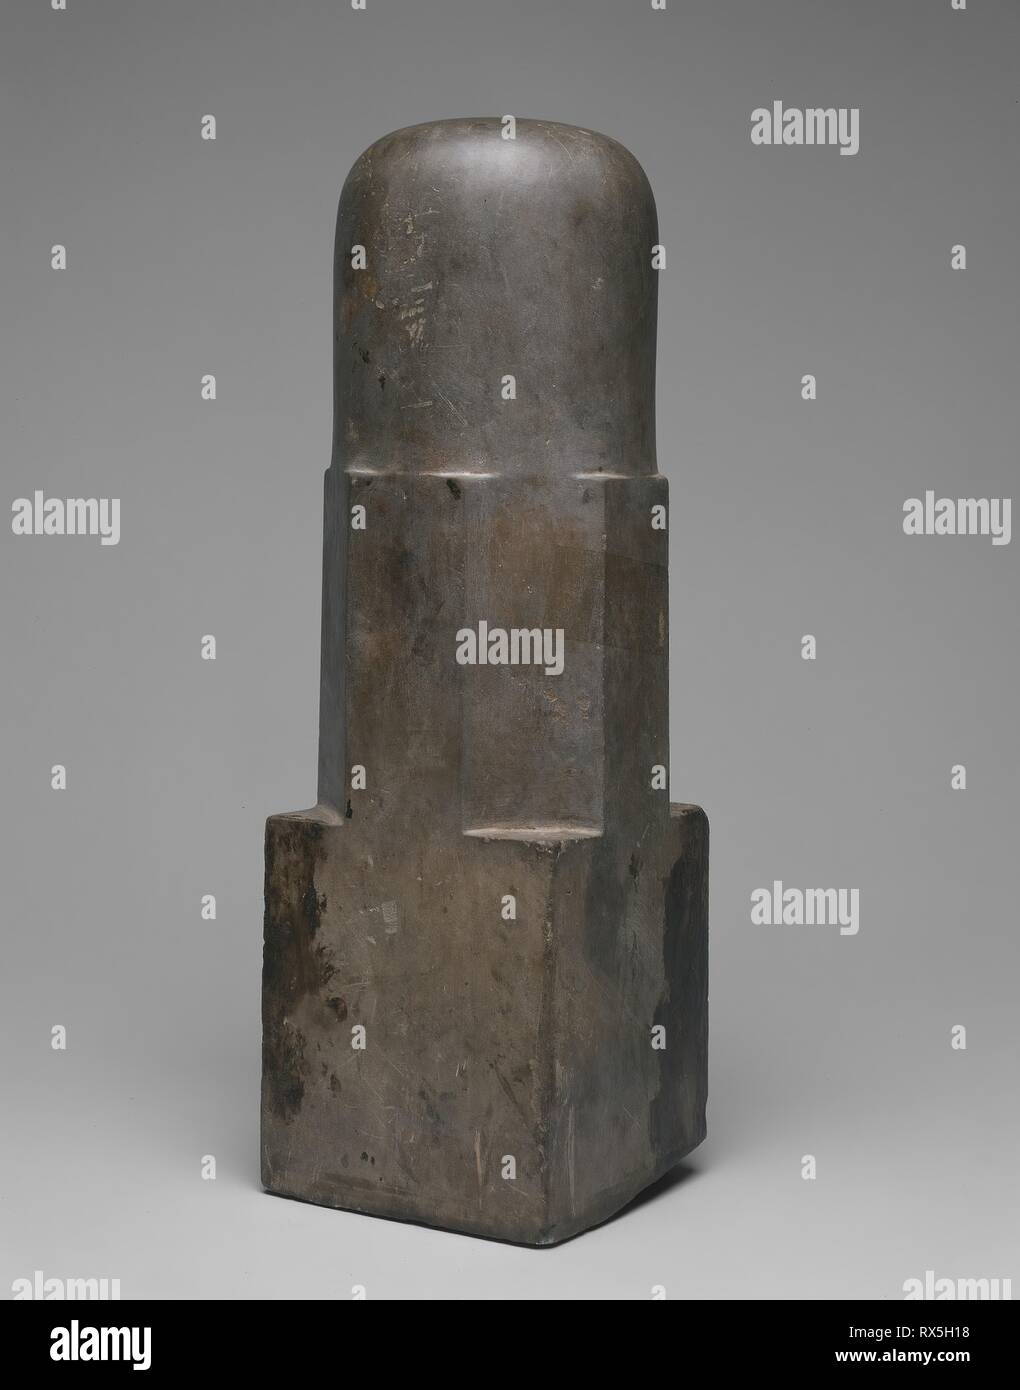 Emblem of the God Shiva (Linga). Cambodia. Date: 901 AD-1300. Dimensions: 46.7 × 14.6 × 14.6 cm (18 3/8 × 5 3/4 × 5 3/4 in.). Sandstone. Origin: Cambodia. Museum: The Chicago Art Institute. Stock Photo